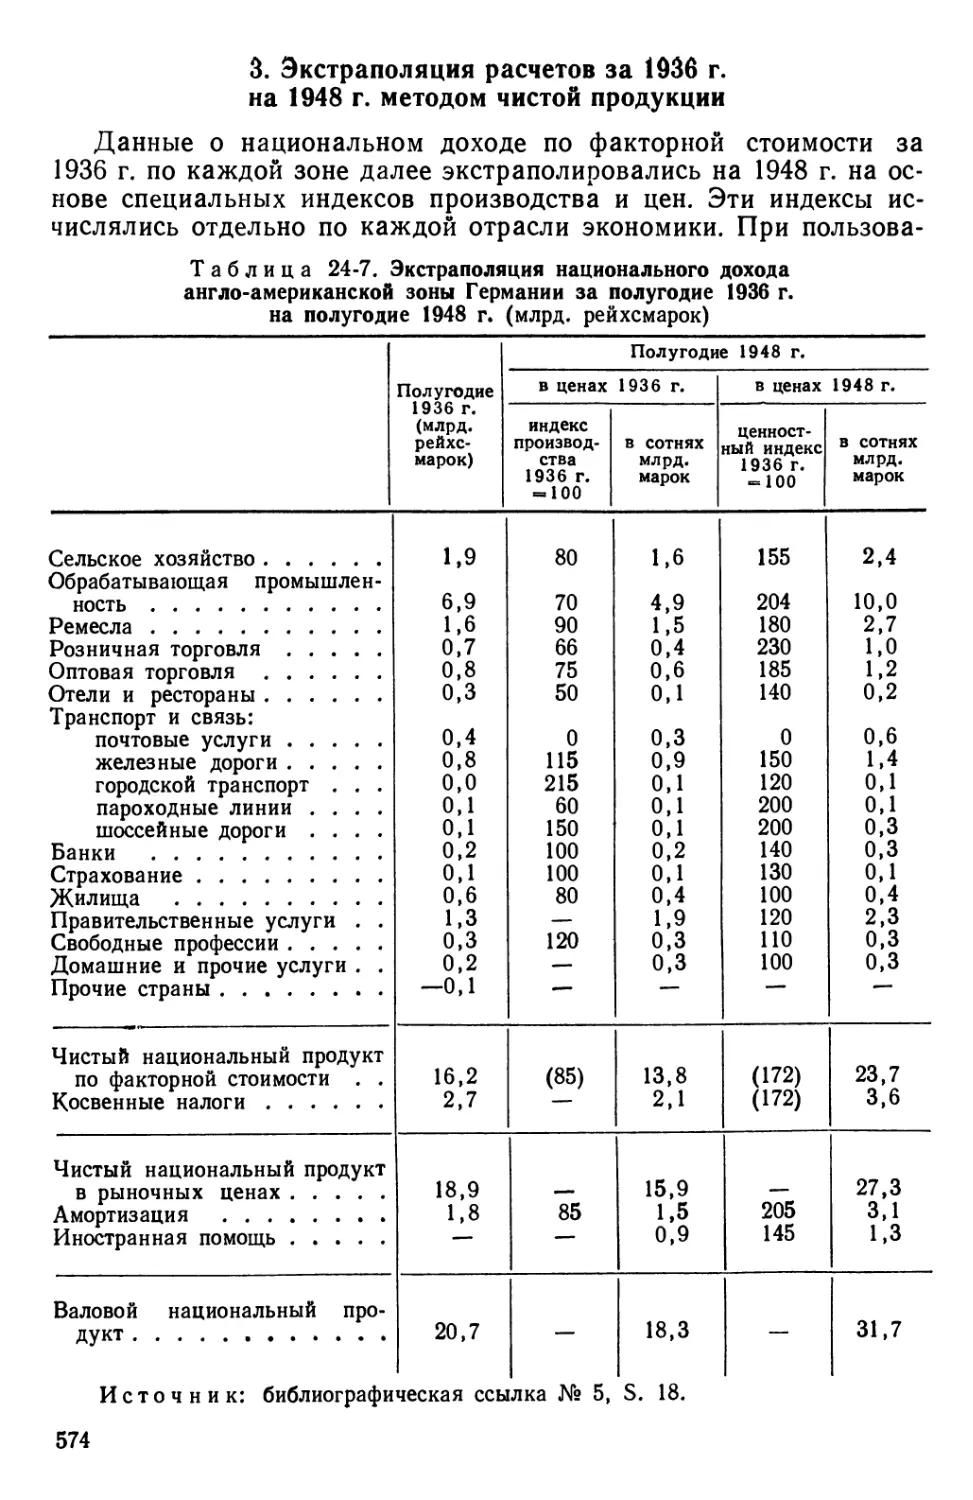 3. Экстраполяция расчетов за 1936 г. на 1948 г. методом чистой продукции